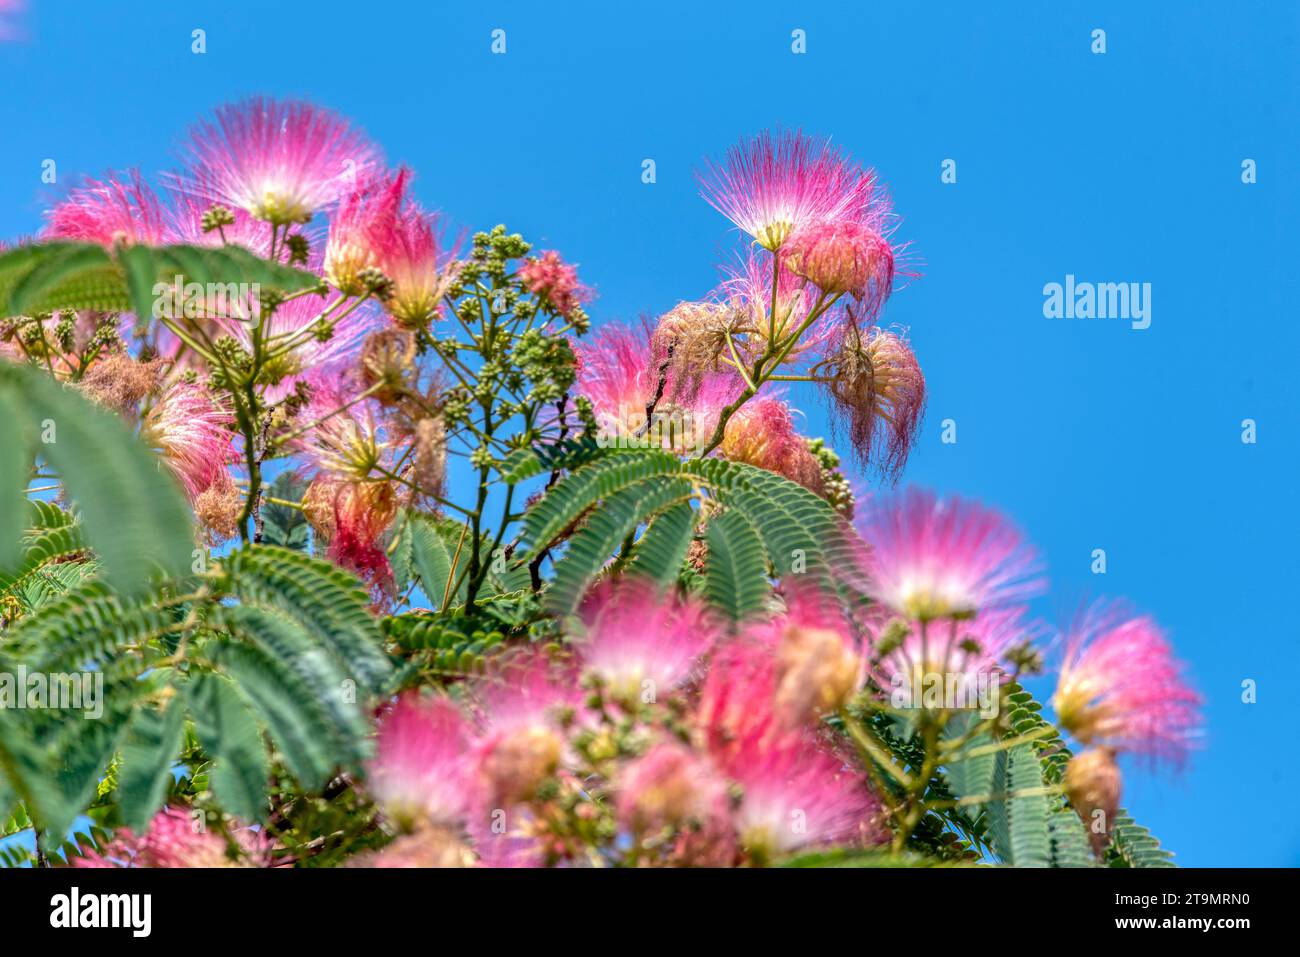 Rosa flauschige Blüten des persischen Seidenbaums (Albizia julibrissin). Japanische Akazie oder rosa Seidenbaum aus der Familie der Fabaceae. Natürlicher Hintergrund und t Stockfoto